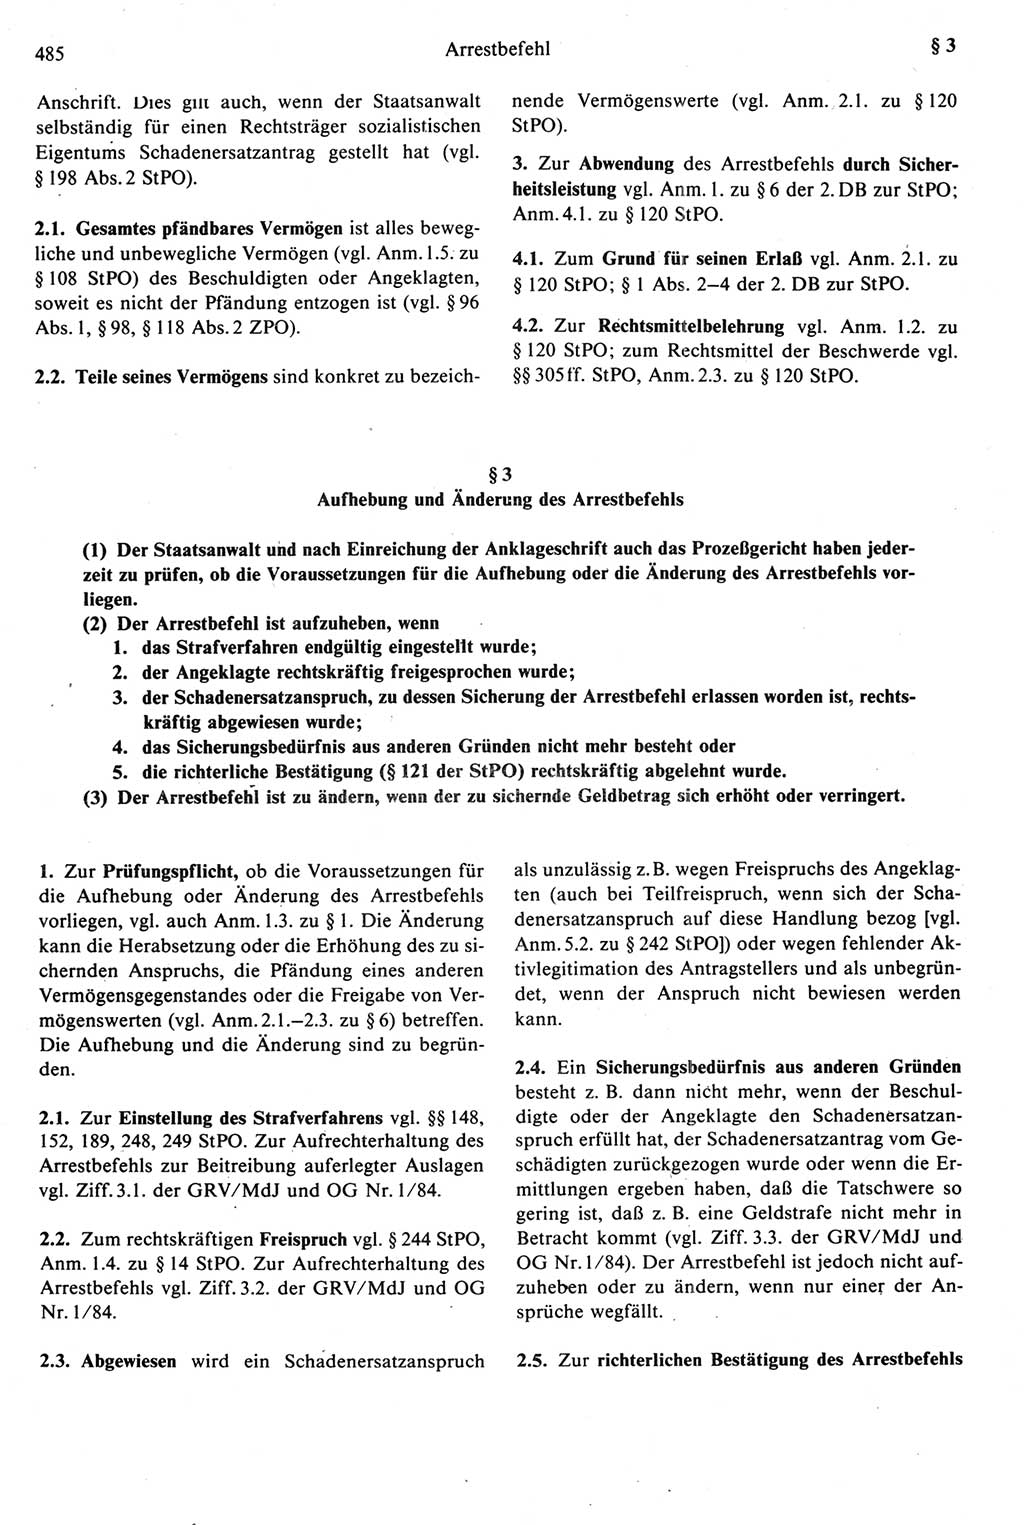 Strafprozeßrecht der DDR [Deutsche Demokratische Republik], Kommentar zur Strafprozeßordnung (StPO) 1987, Seite 485 (Strafprozeßr. DDR Komm. StPO 1987, S. 485)